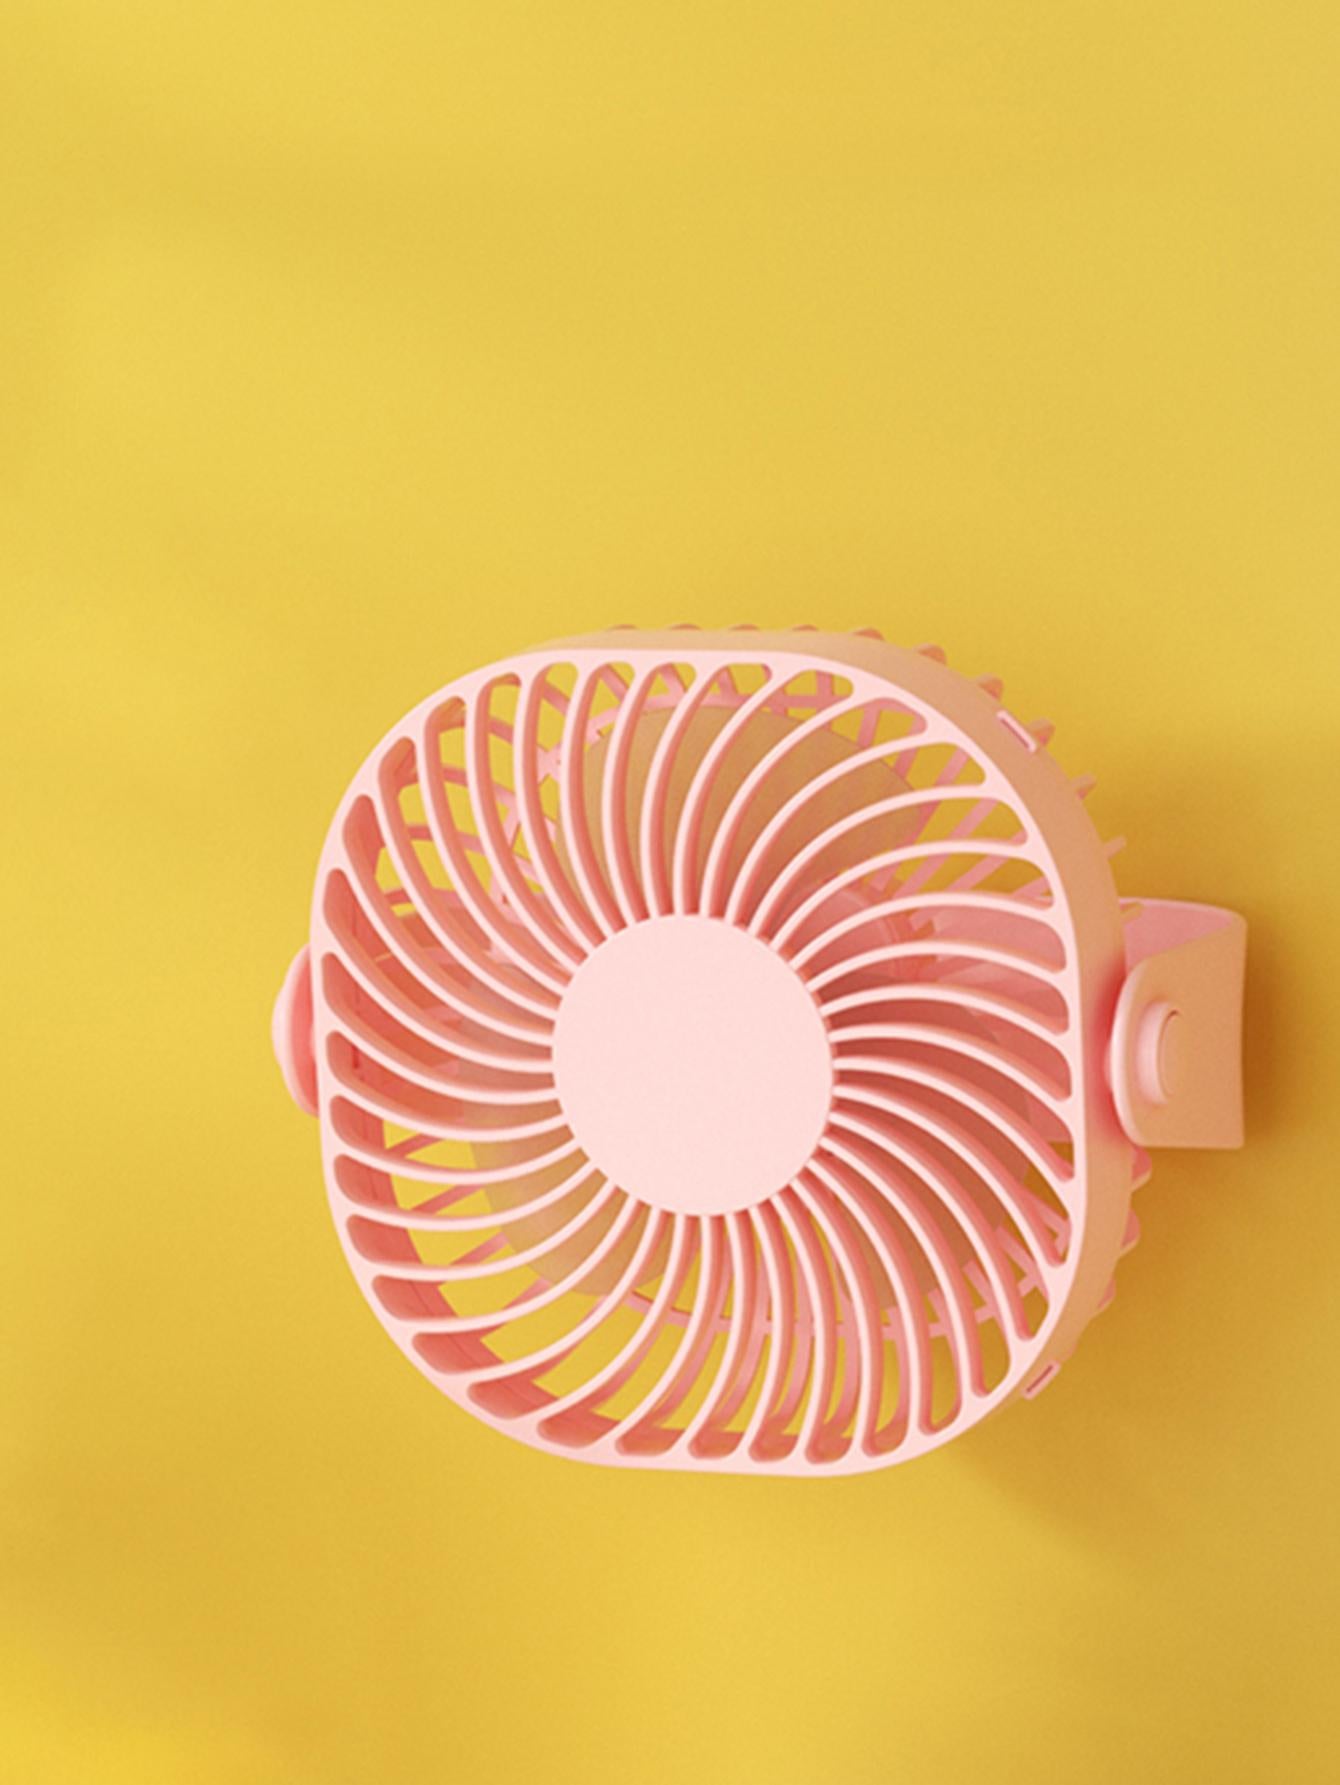 Plug-in Desk/desktop/wall-mounted Fan In Pink